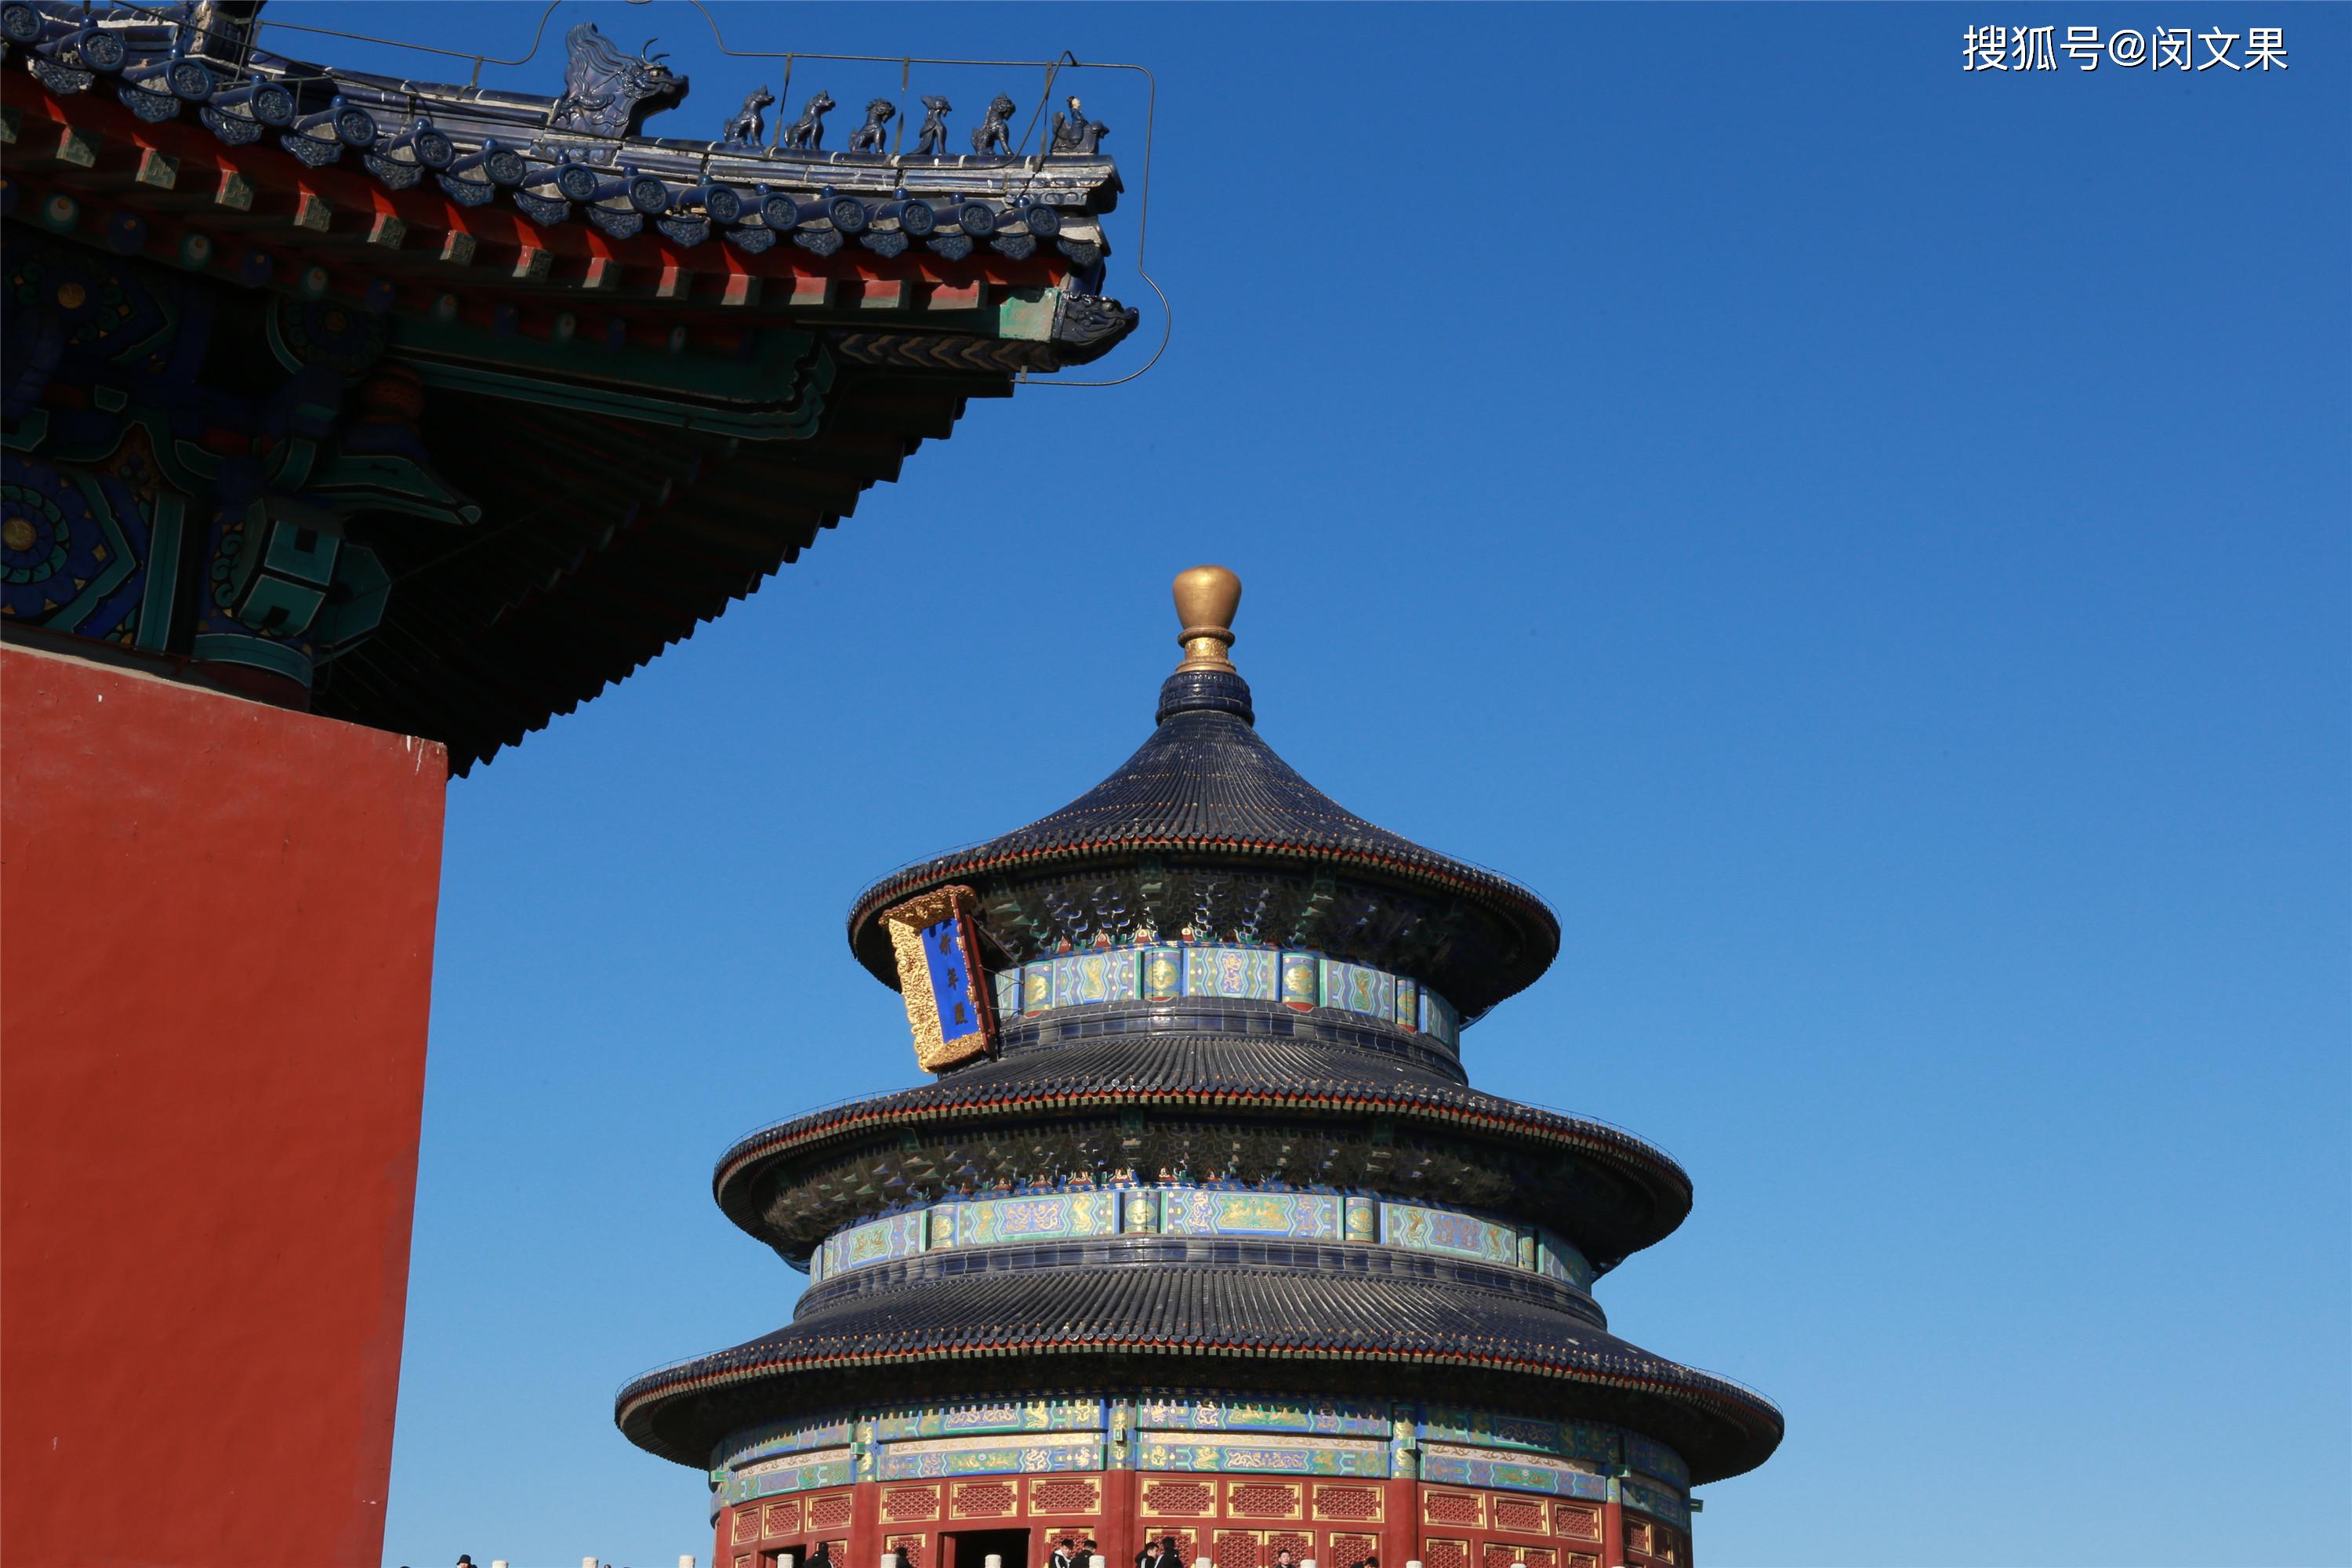 祭天,祈谷,世界上最大的祭天建筑群|北京天坛